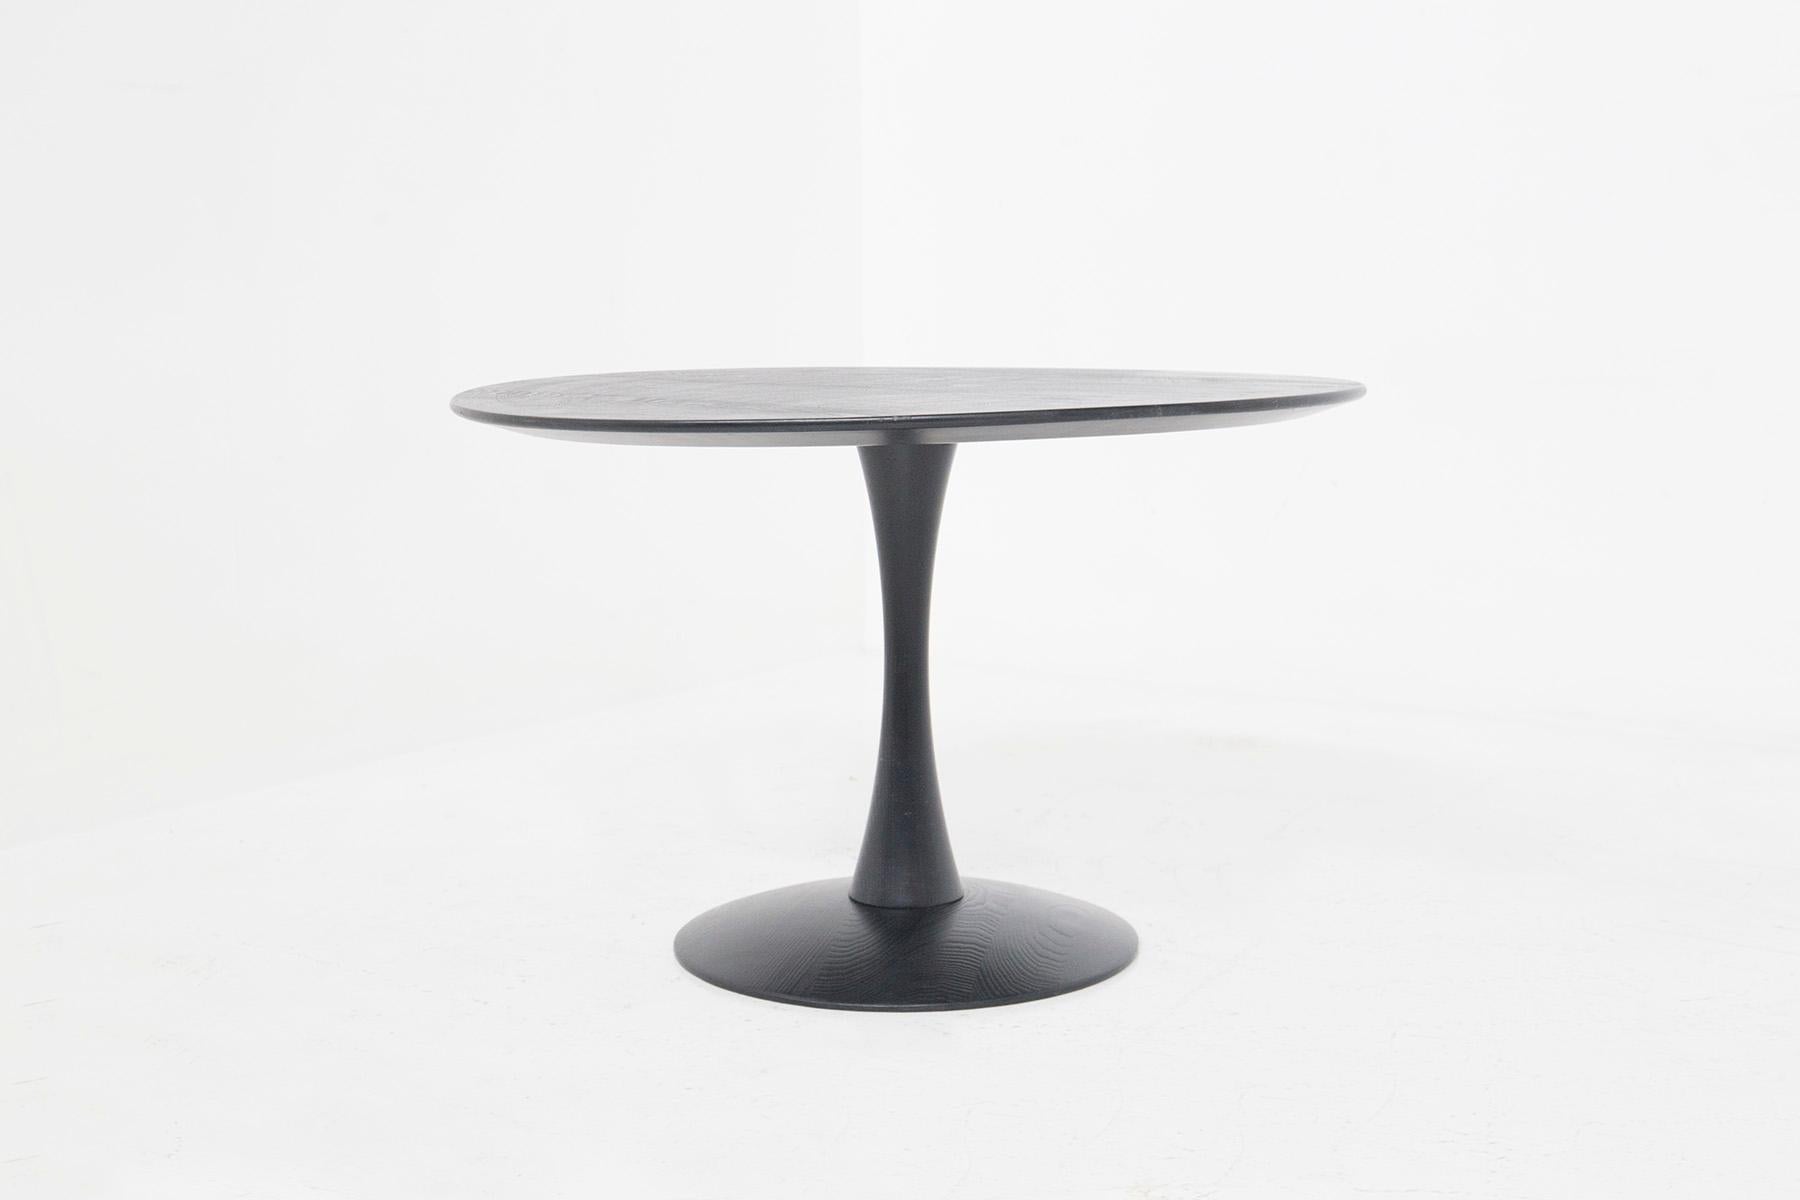 Magnifique table basse danoise vintage conçue dans les années 1960 par Nanna Ditzel.
Sa structure est composée d'éléments purement circulaires, des éléments propres et essentiels qui caractérisent le style typique du designer danois. 
La table est